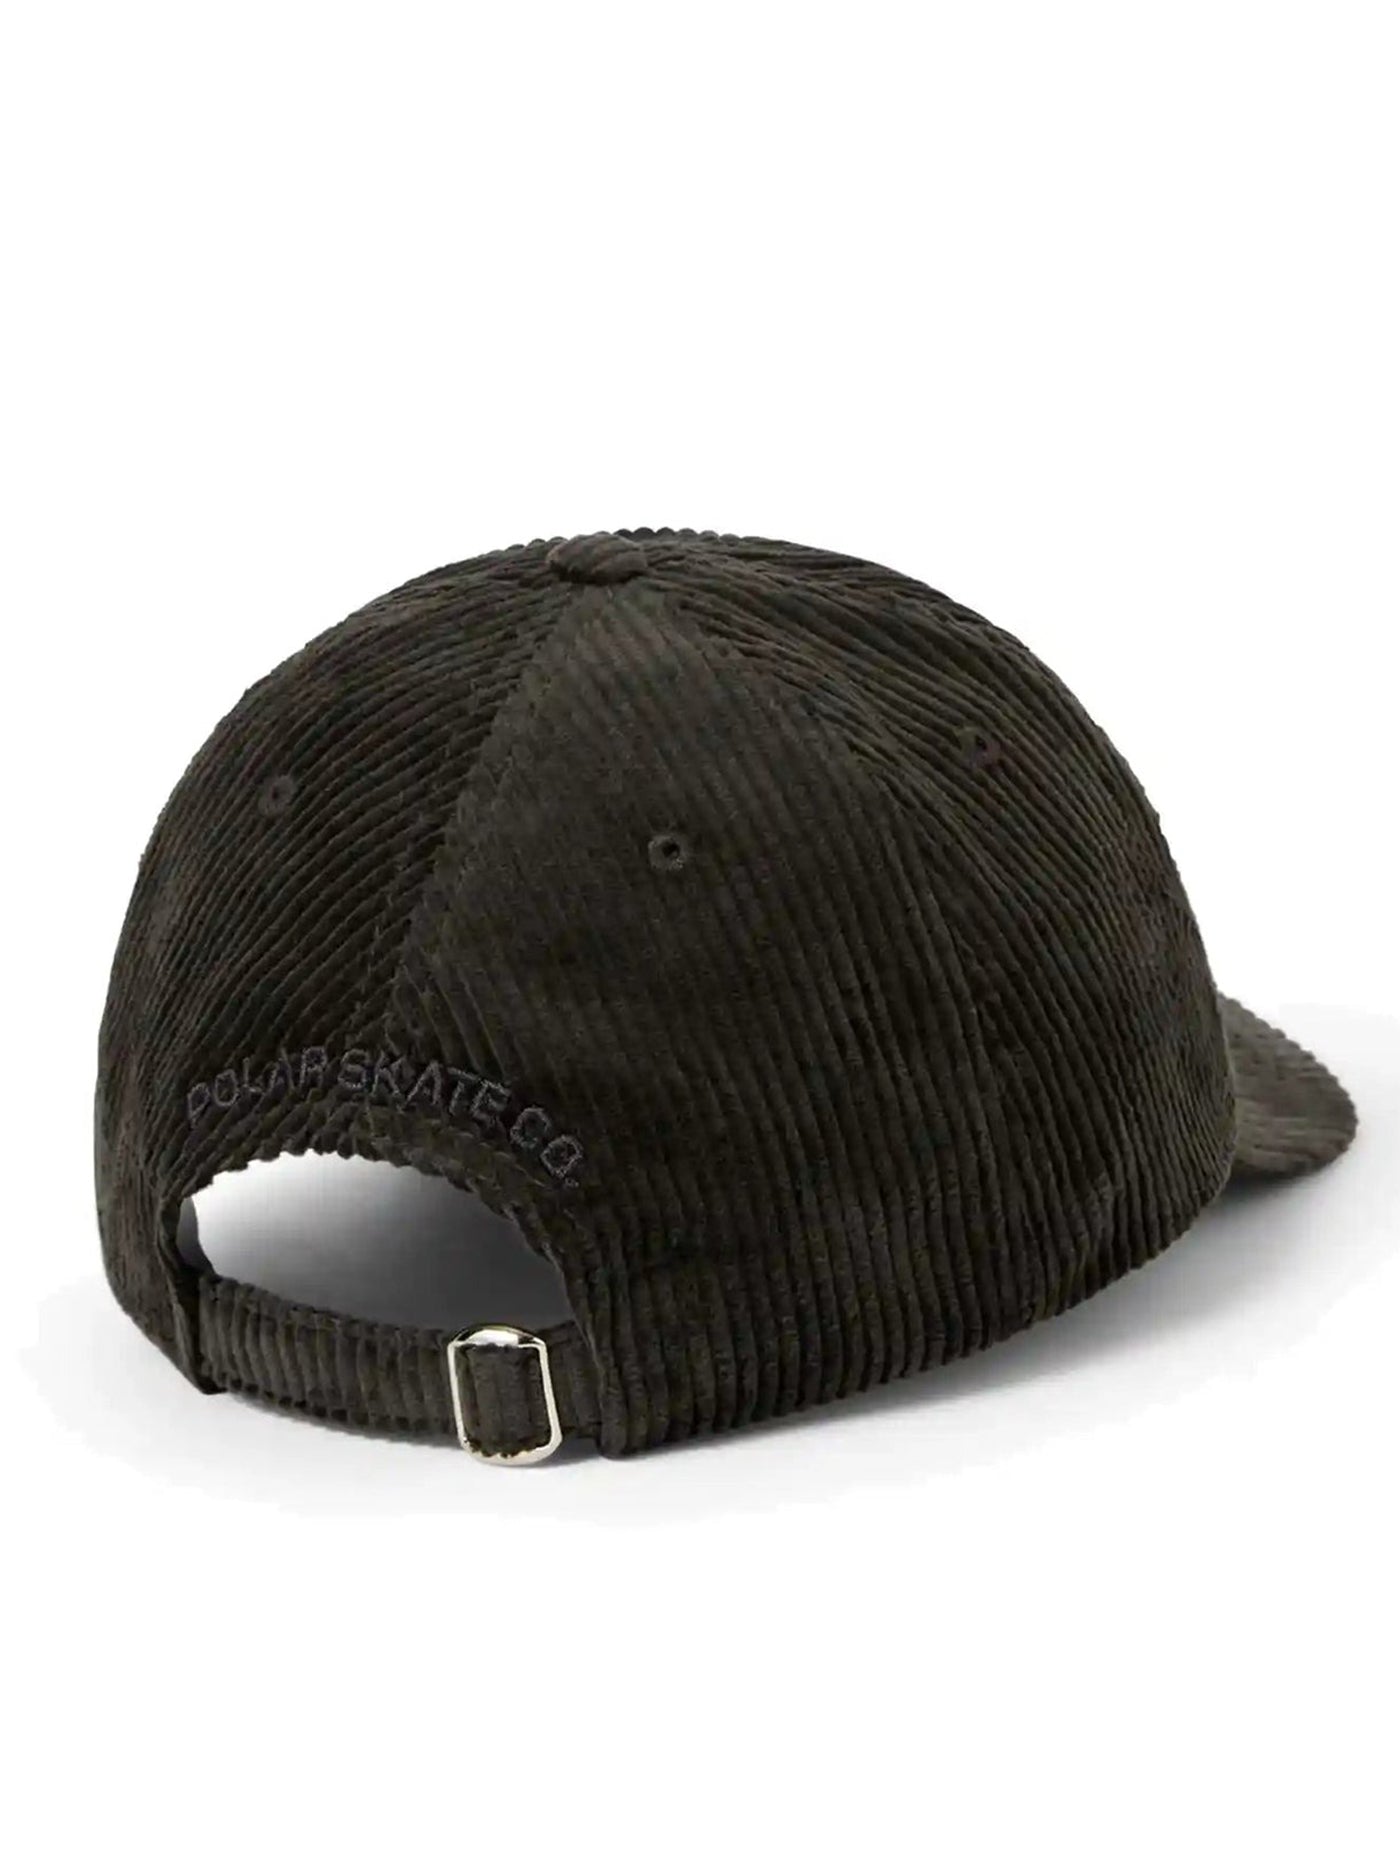 Polar Skate Co. Sam Cord Strapback Hat